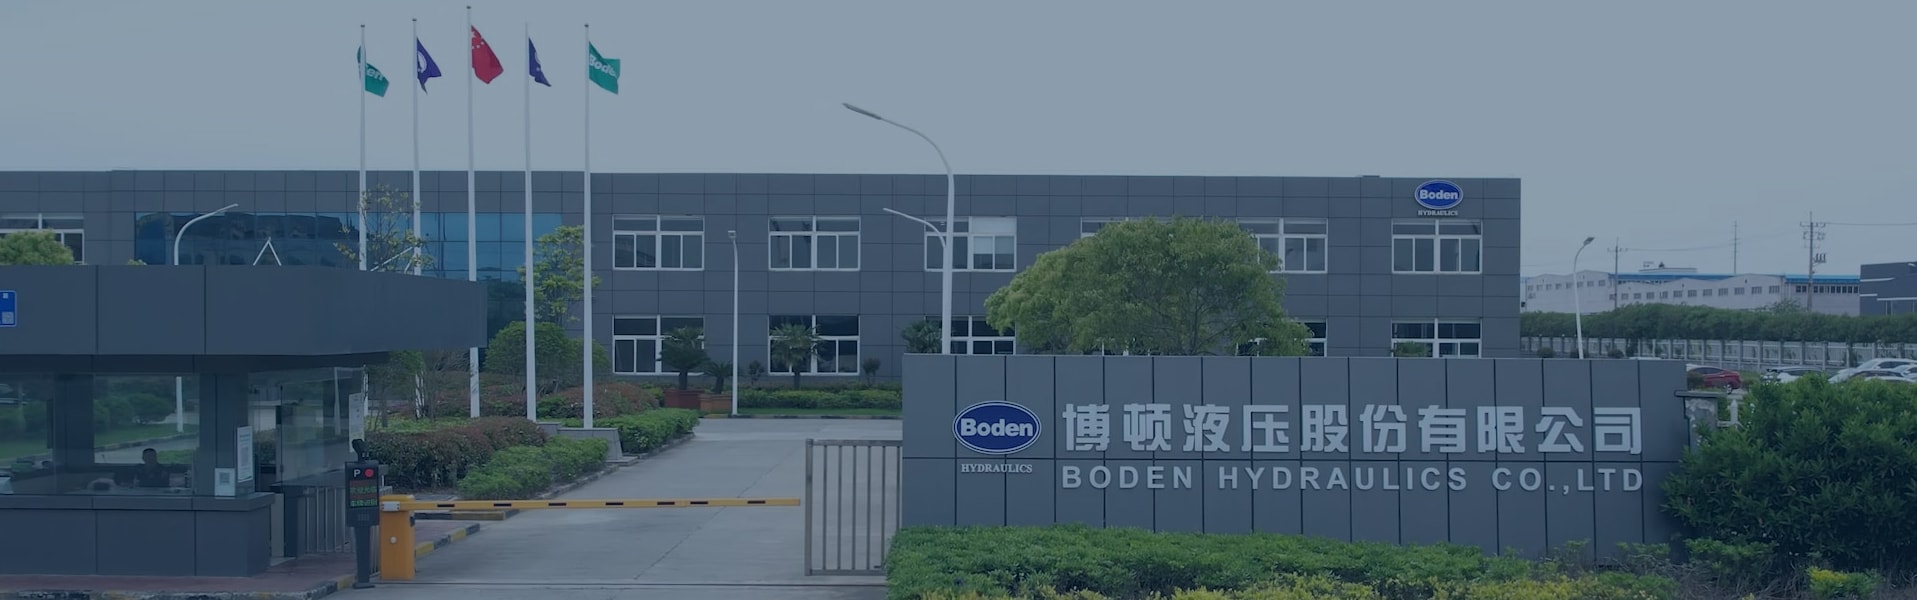 Boden Hydraulics - это интегрированное предприятие по производству гидравлических компонентов, которое сочетает в себе проектирование, производство и продажи.